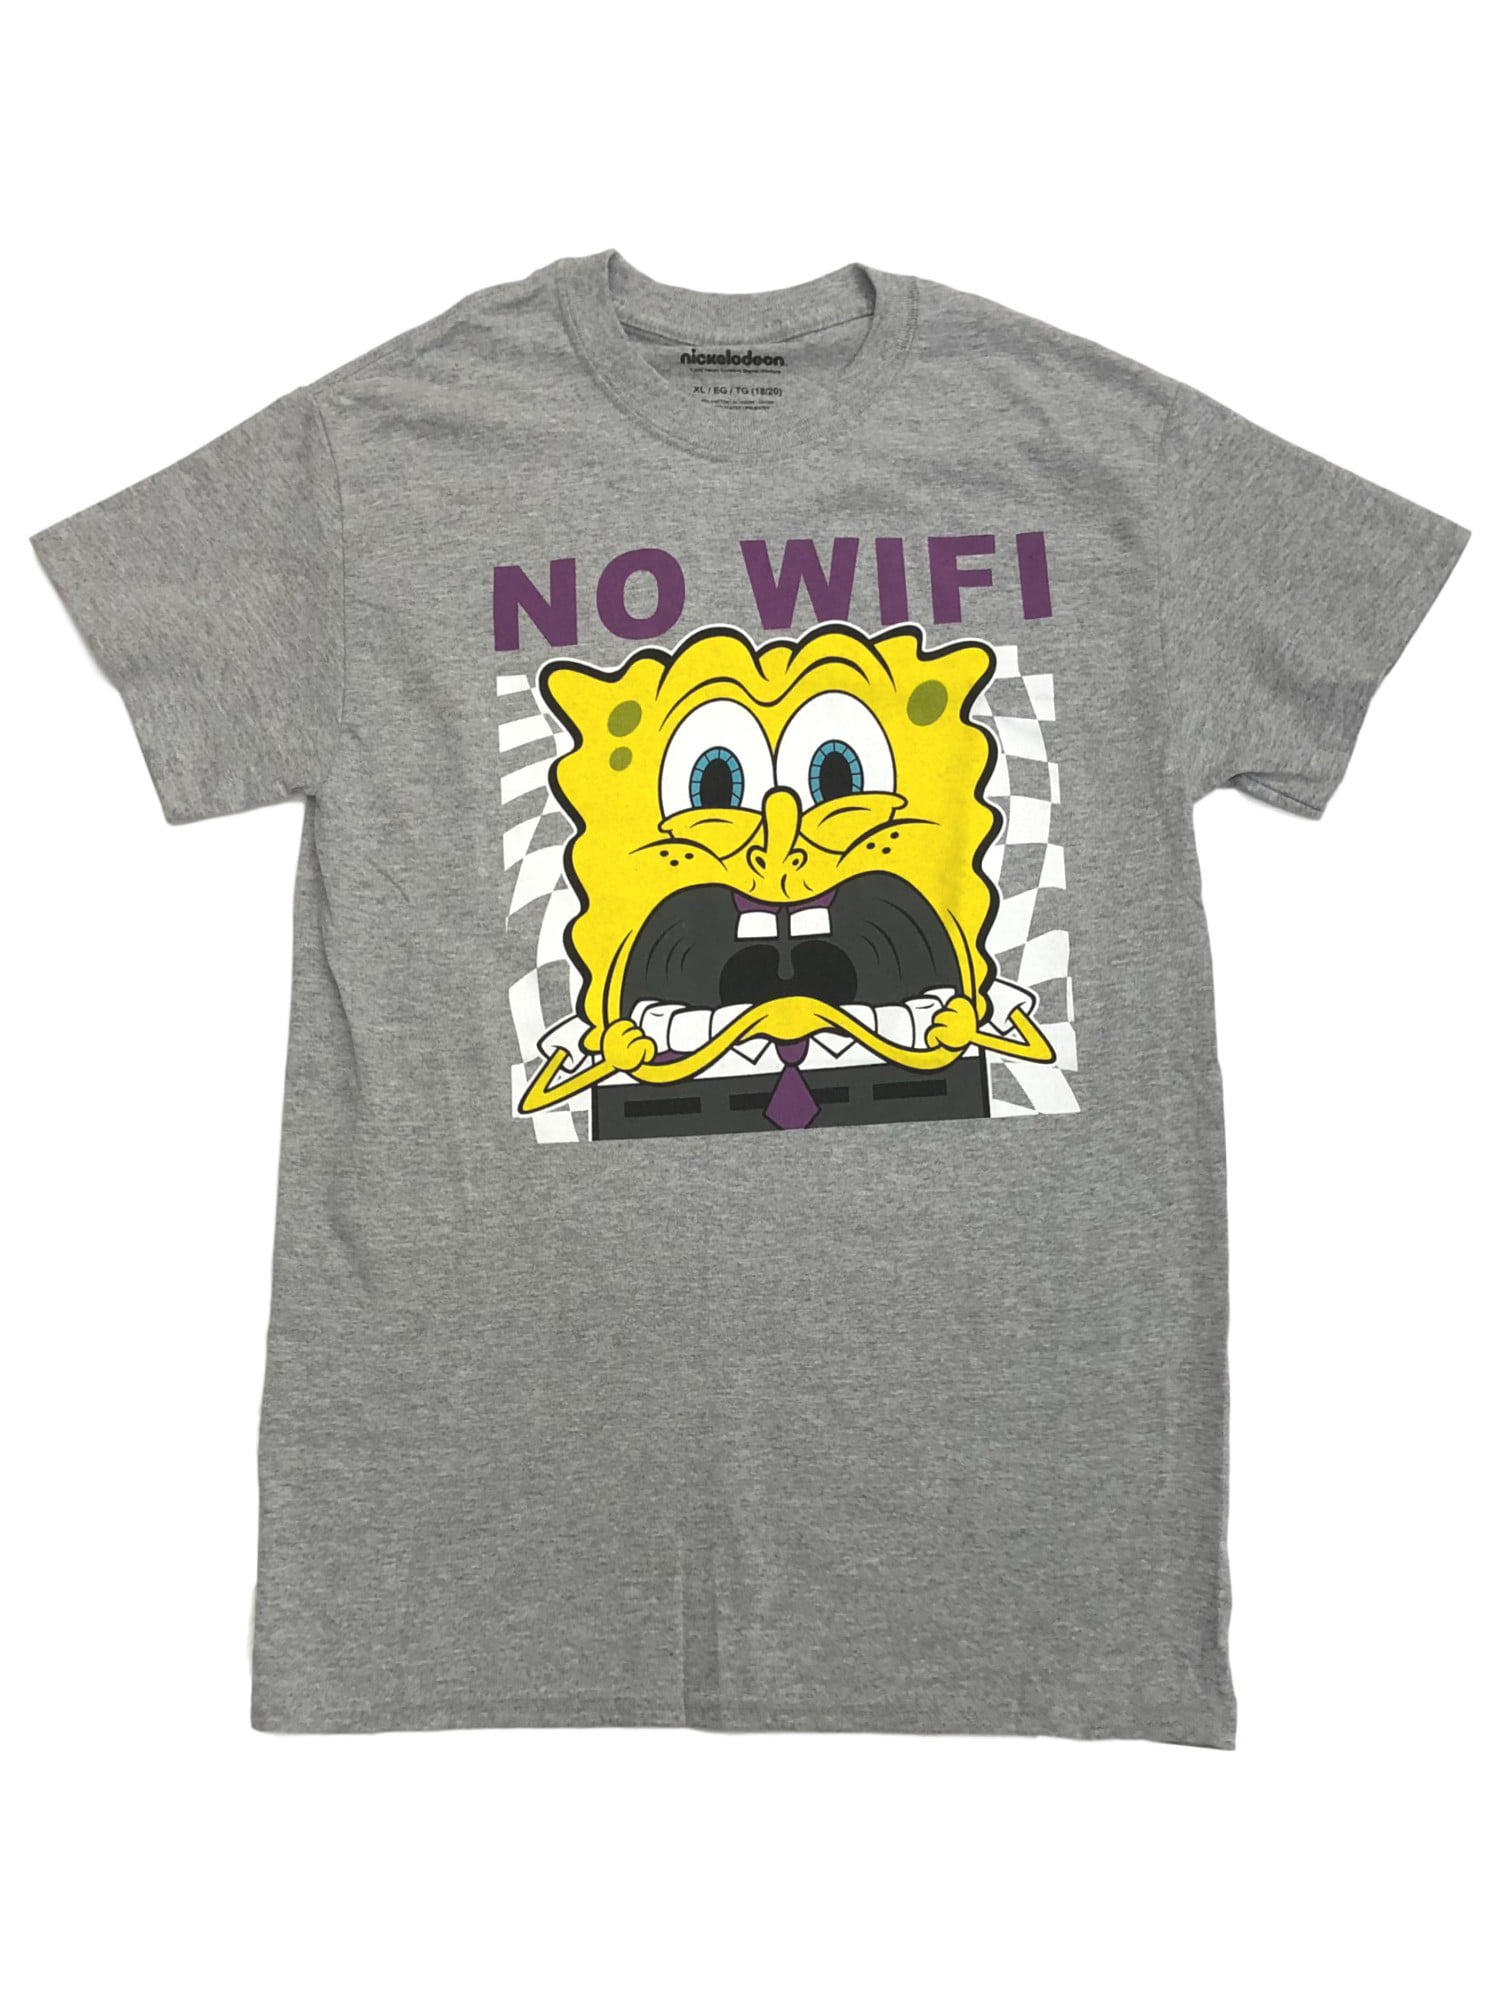 Spongebob купить. Spongebob t Shirt. Tom ray Spongebob t Shirt. Tom Oray Spongebob t Shirt. Puma Spongebob купить.